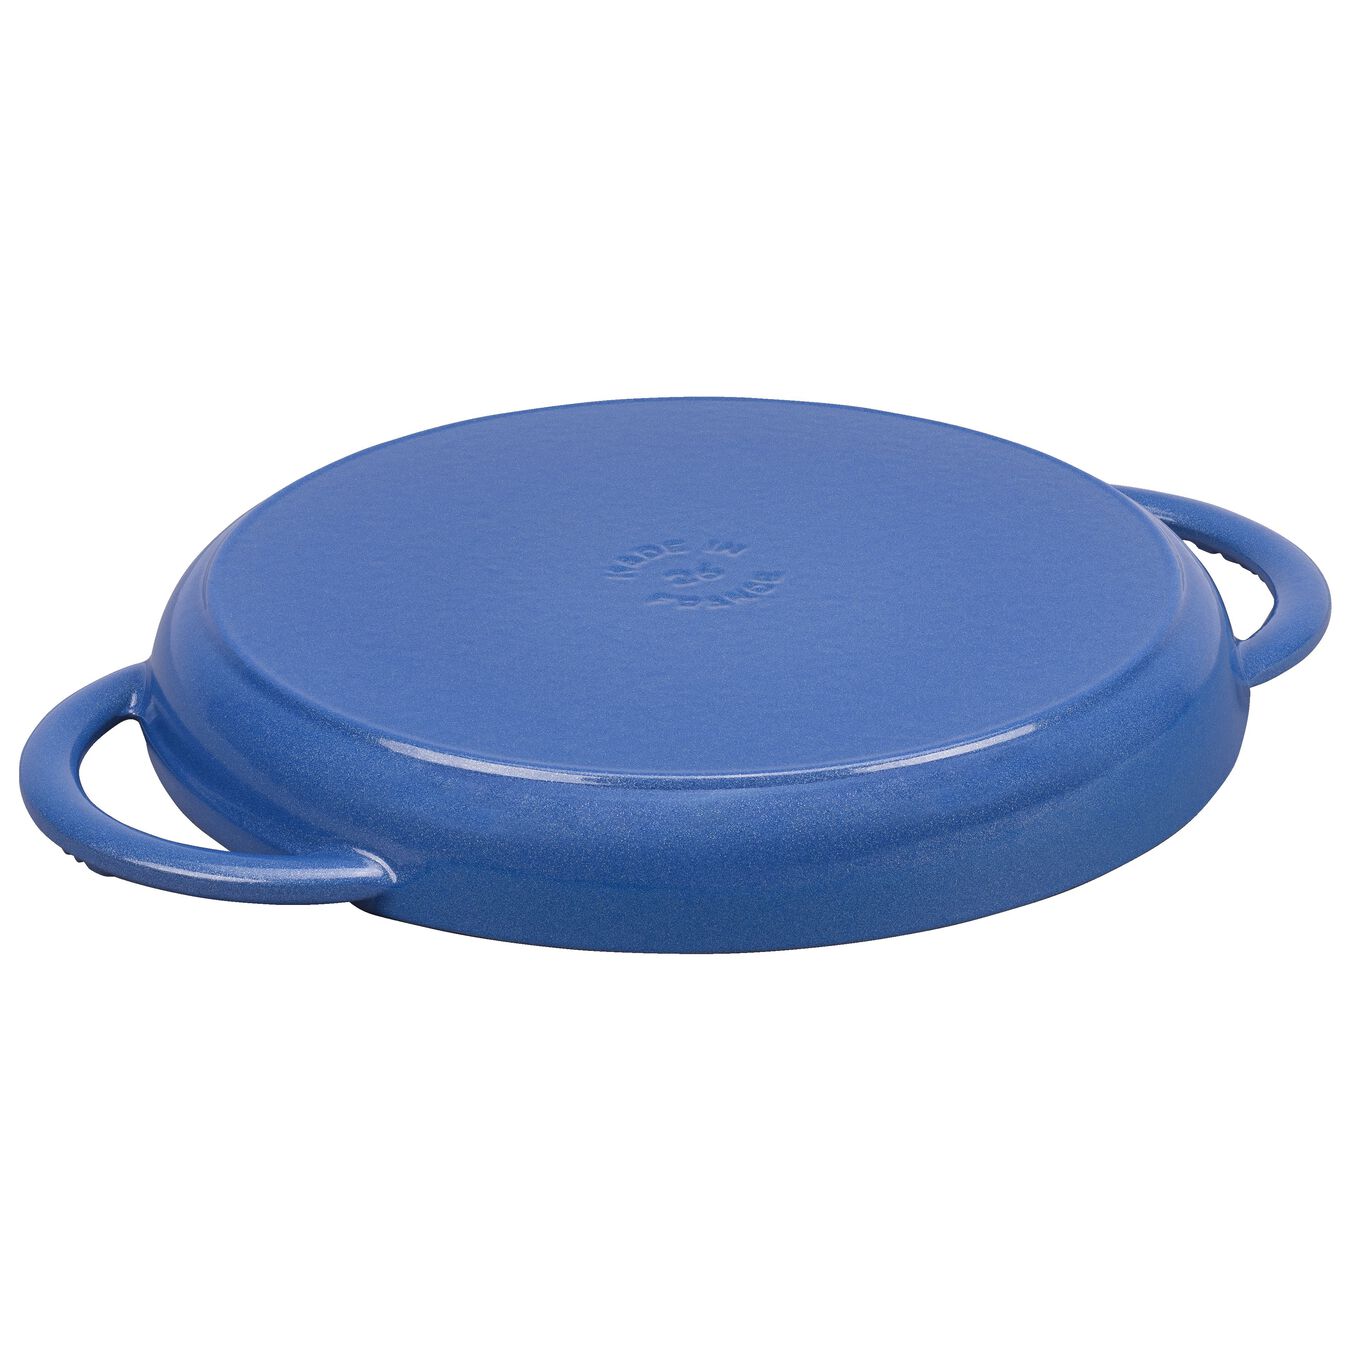 round, Grill pan, metallic blue,,large 2